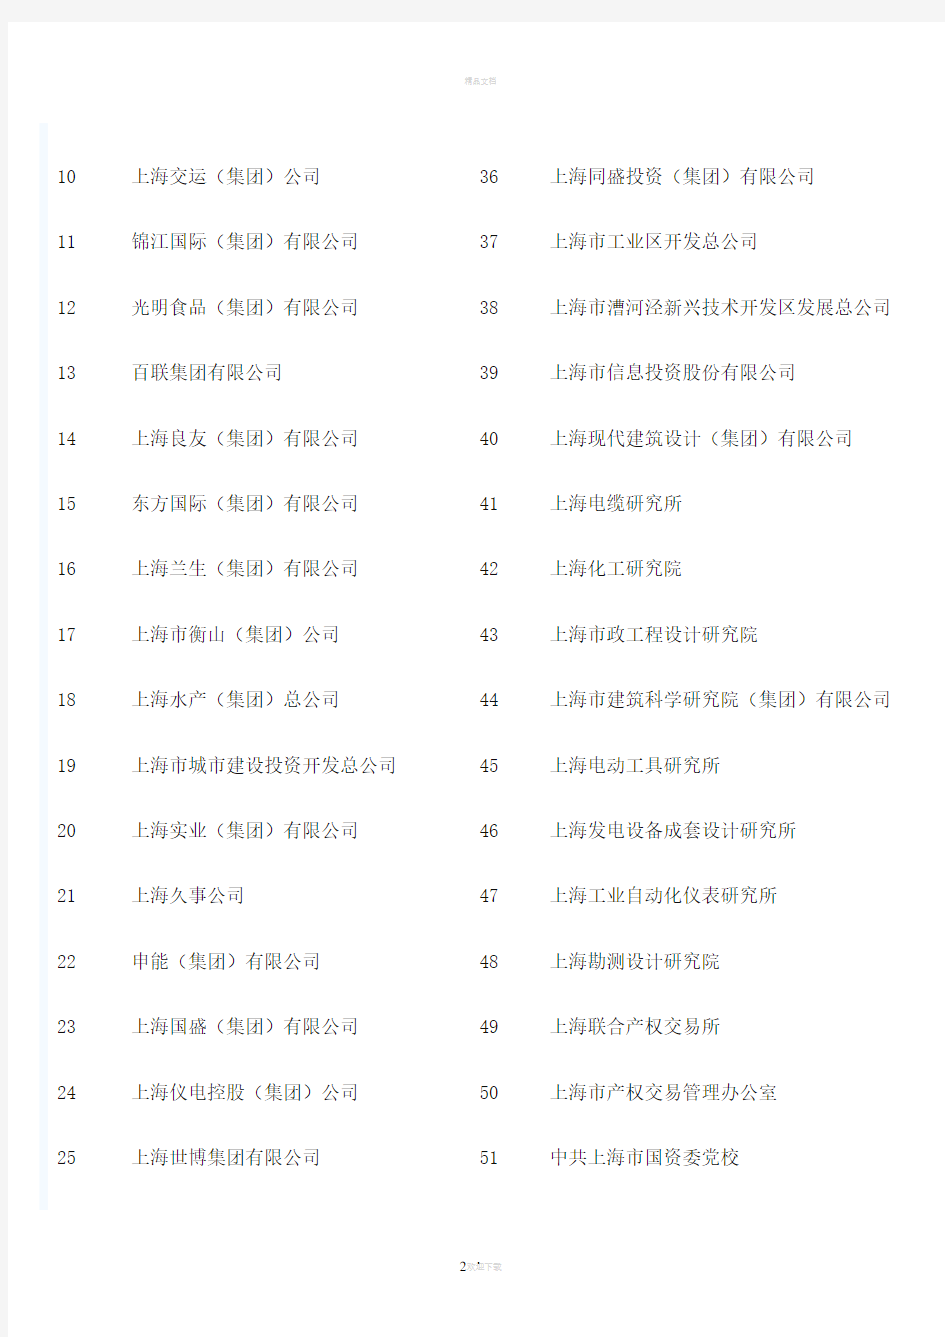 上海市国资委下属企业名单